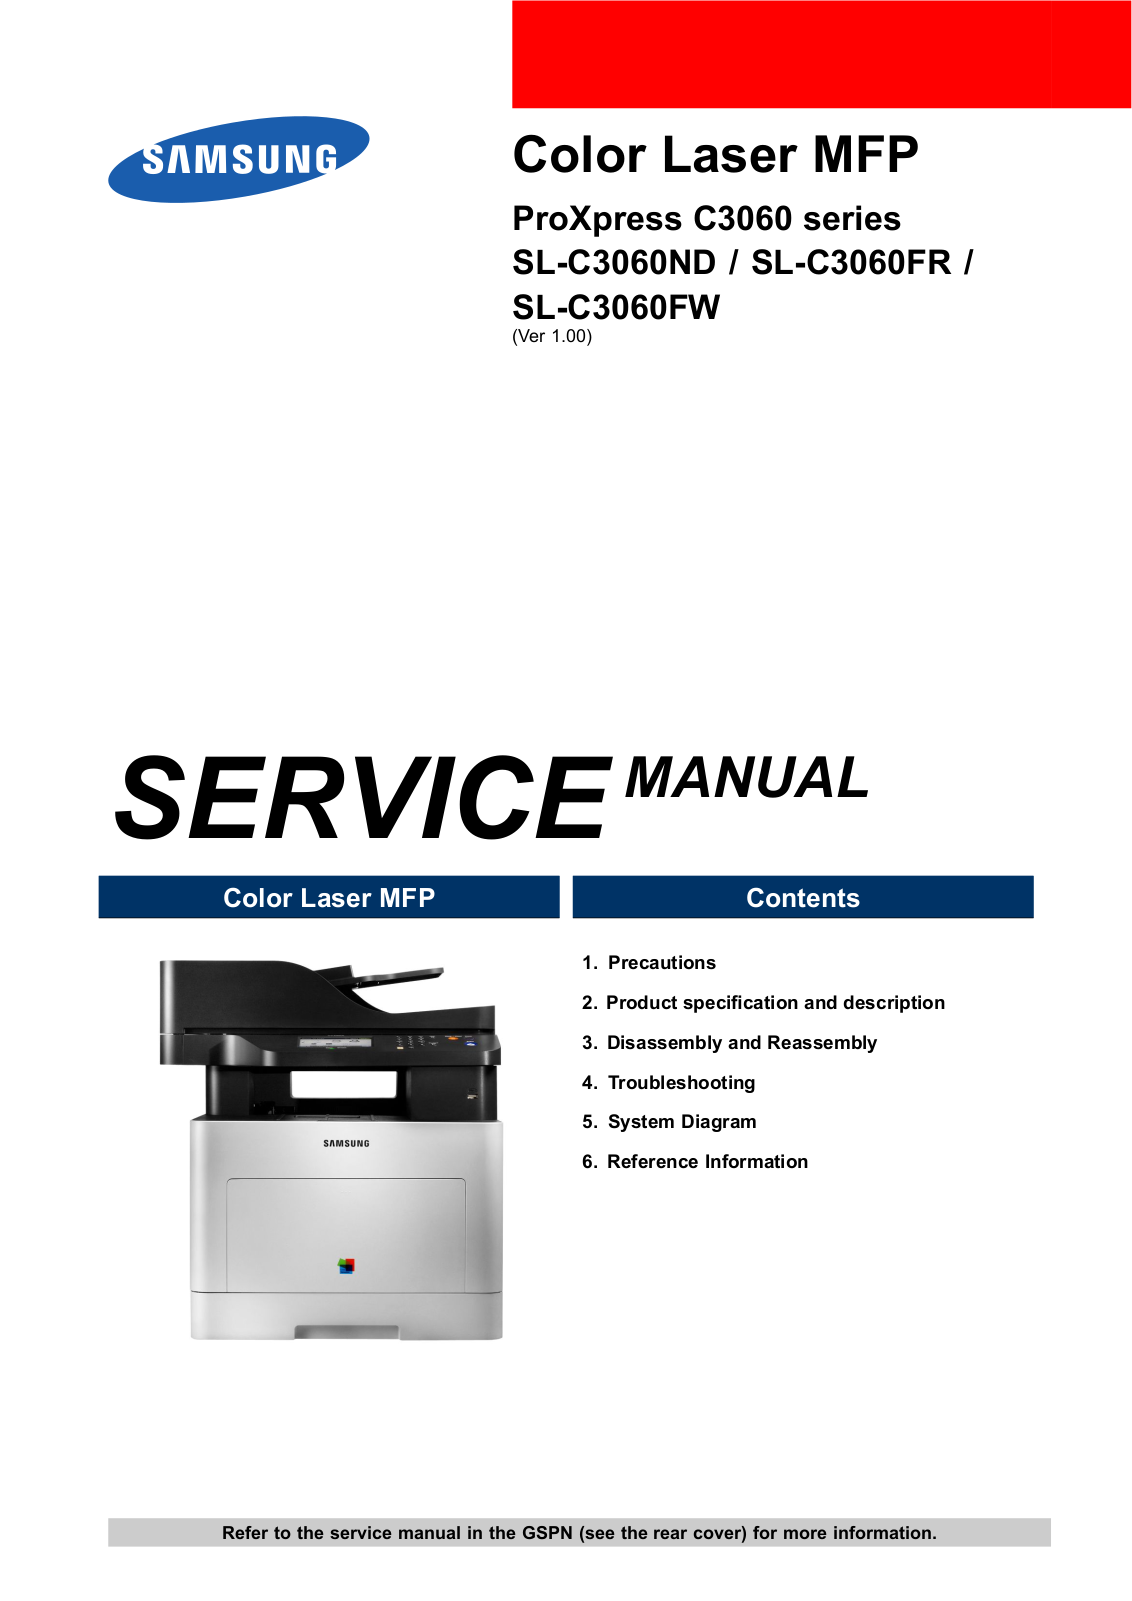 Samsung SL-C3060FR, SL-C3060FW, SL-C3060ND, C3060 Service Manual